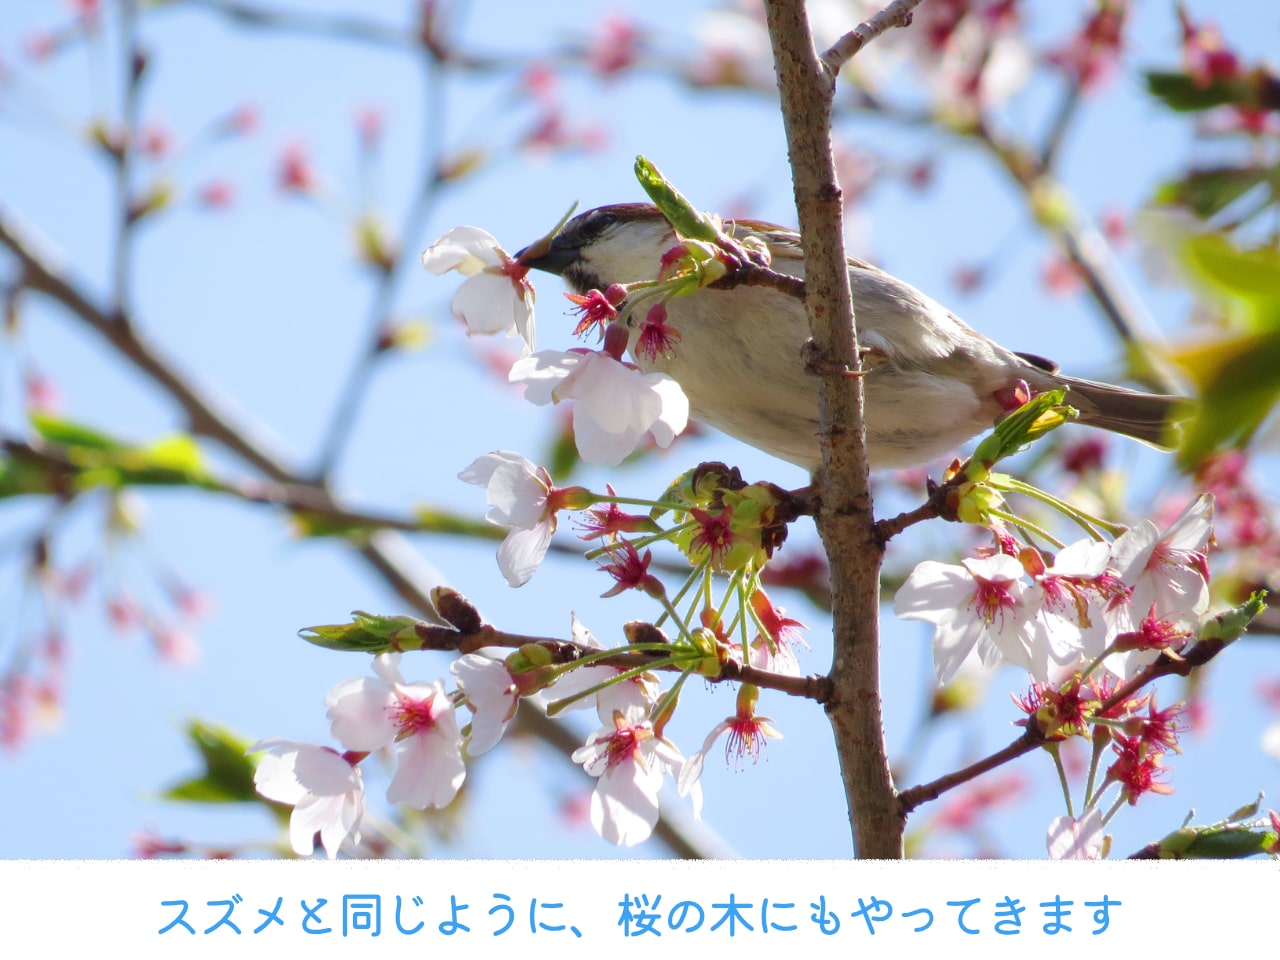 桜の木にやってきたニュウナイスズメ